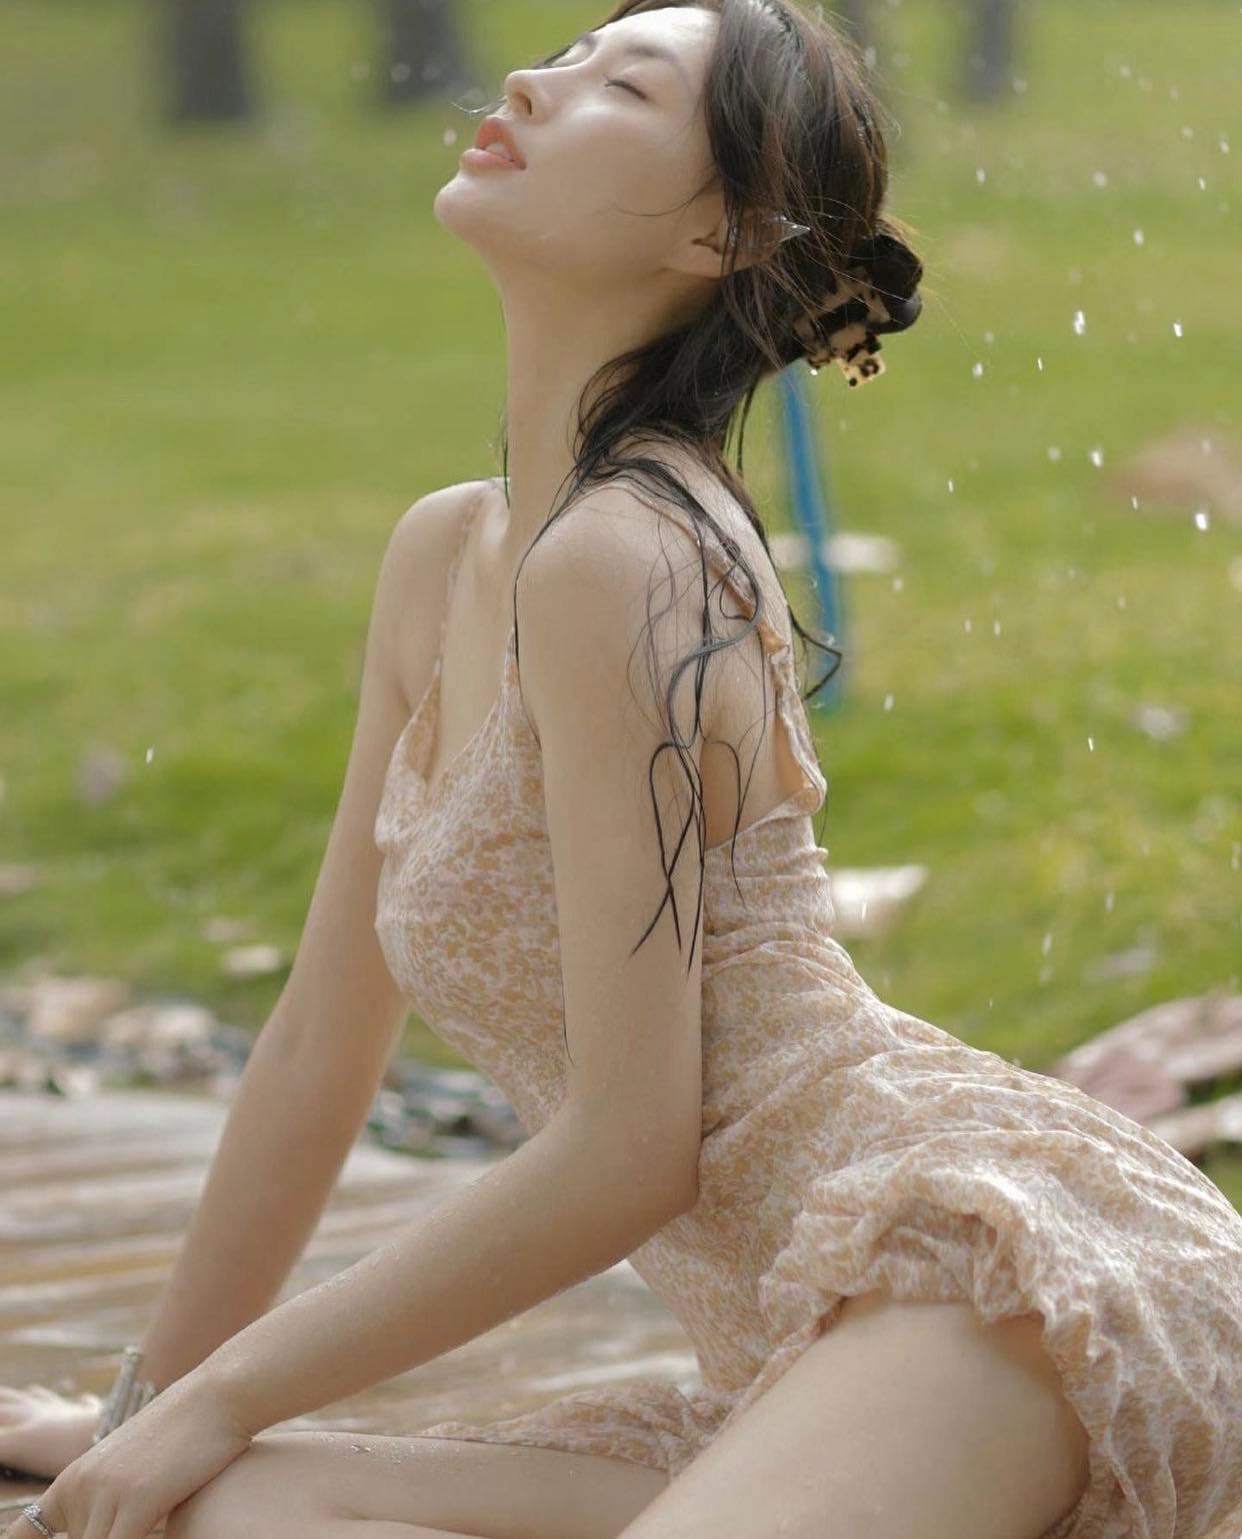 Người đẹp Trung Quốc diện váy "ướt nước" chụp hình theo phong cách "ngây thơ gợi tình", phô diễn từng đường nét cơ thể.